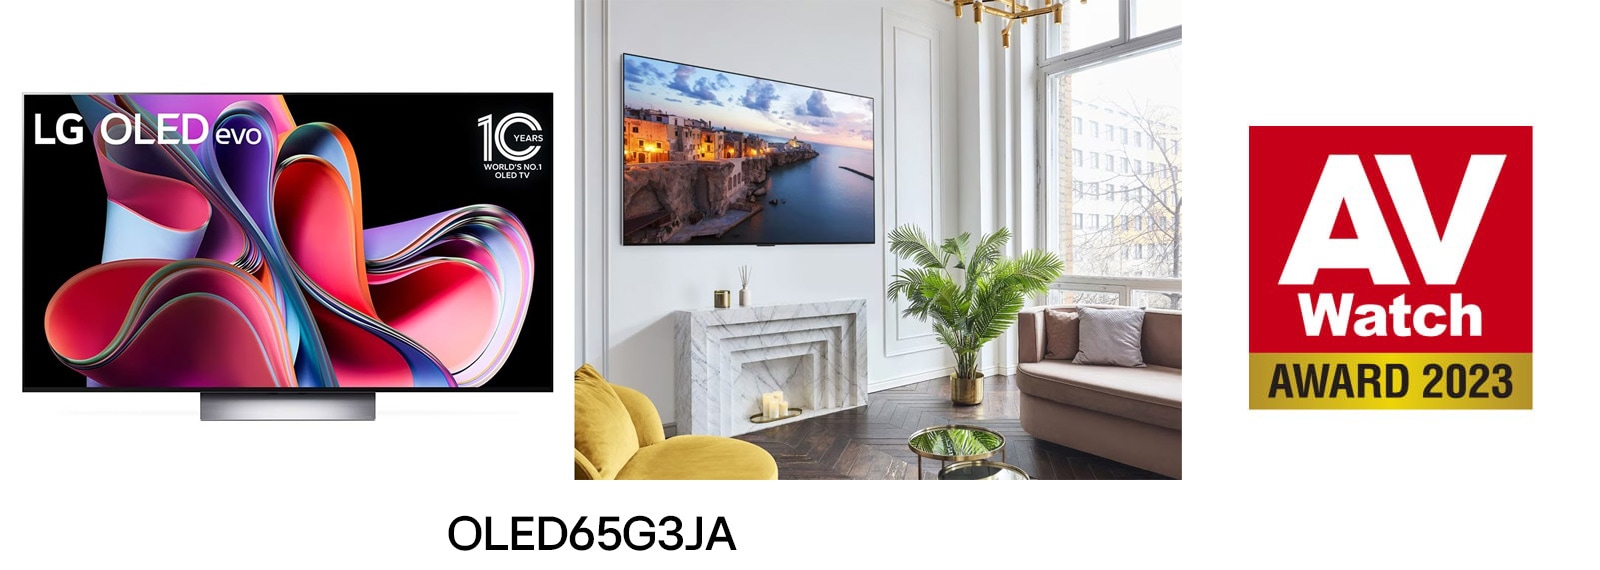 65インチ「OLED65G3PJA」が「AV Watchアワード」の初代“有機ELテレビ 